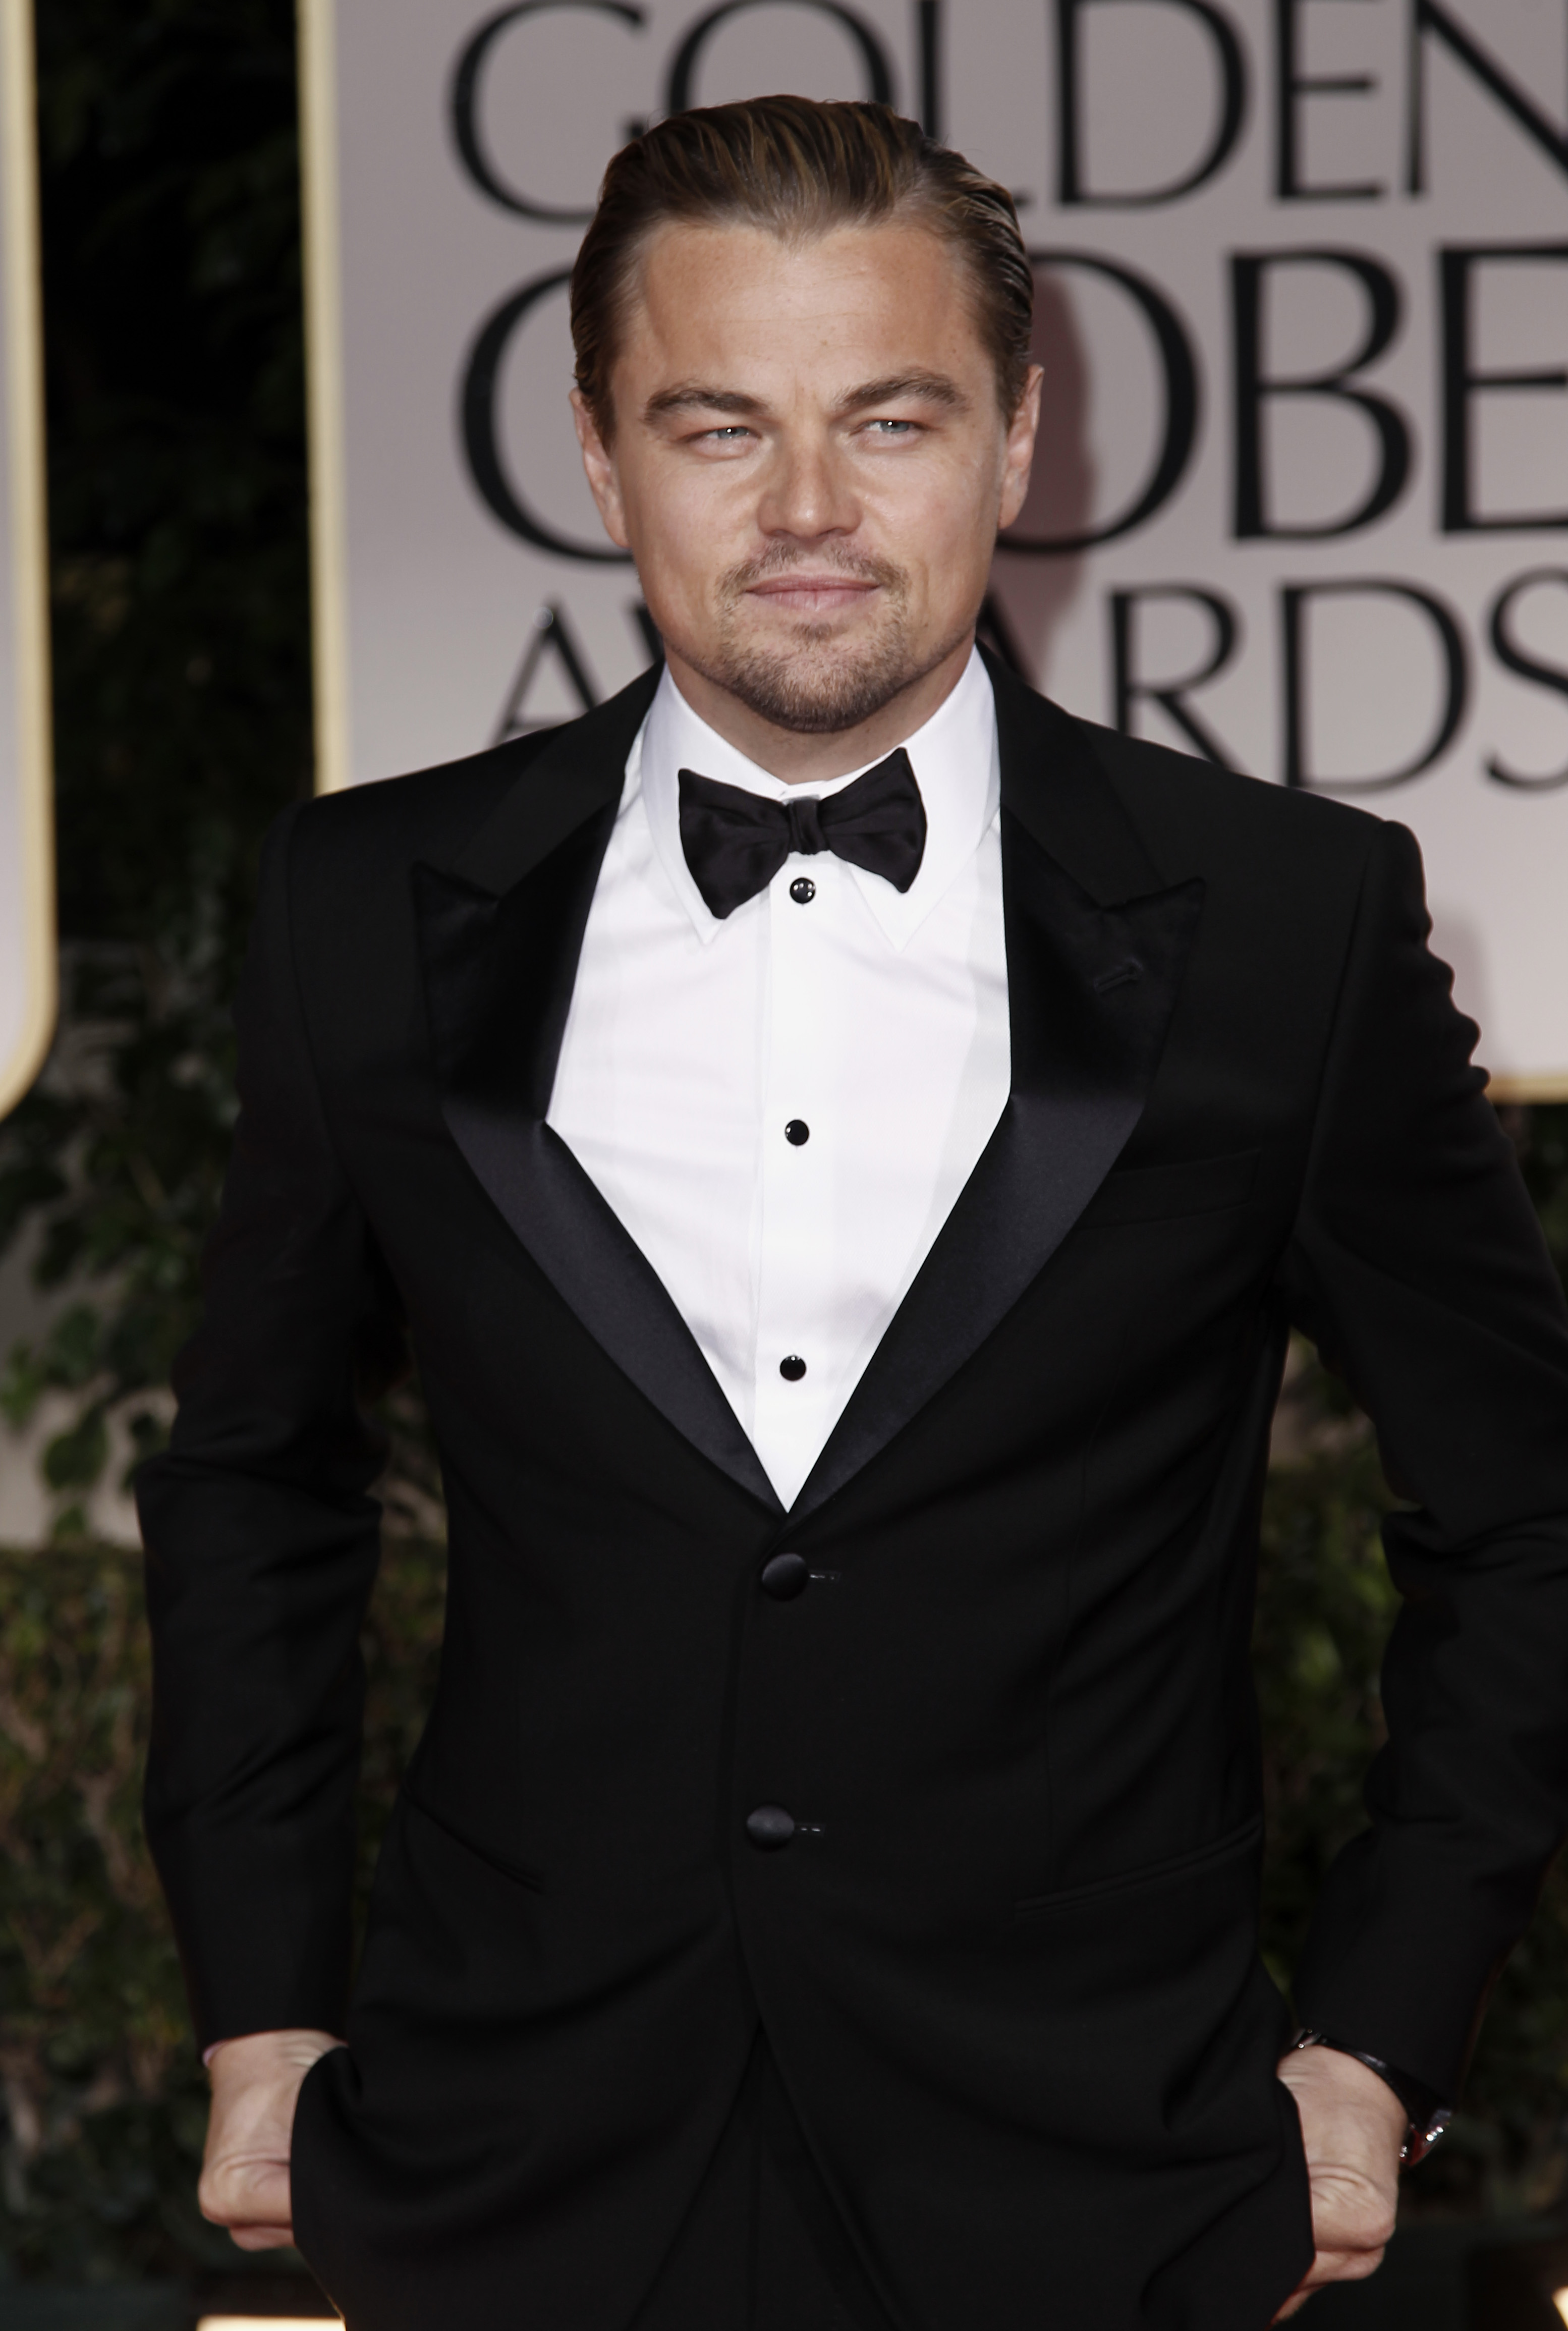 Leonardo DiCaprio photo gallery - high quality pics of ...